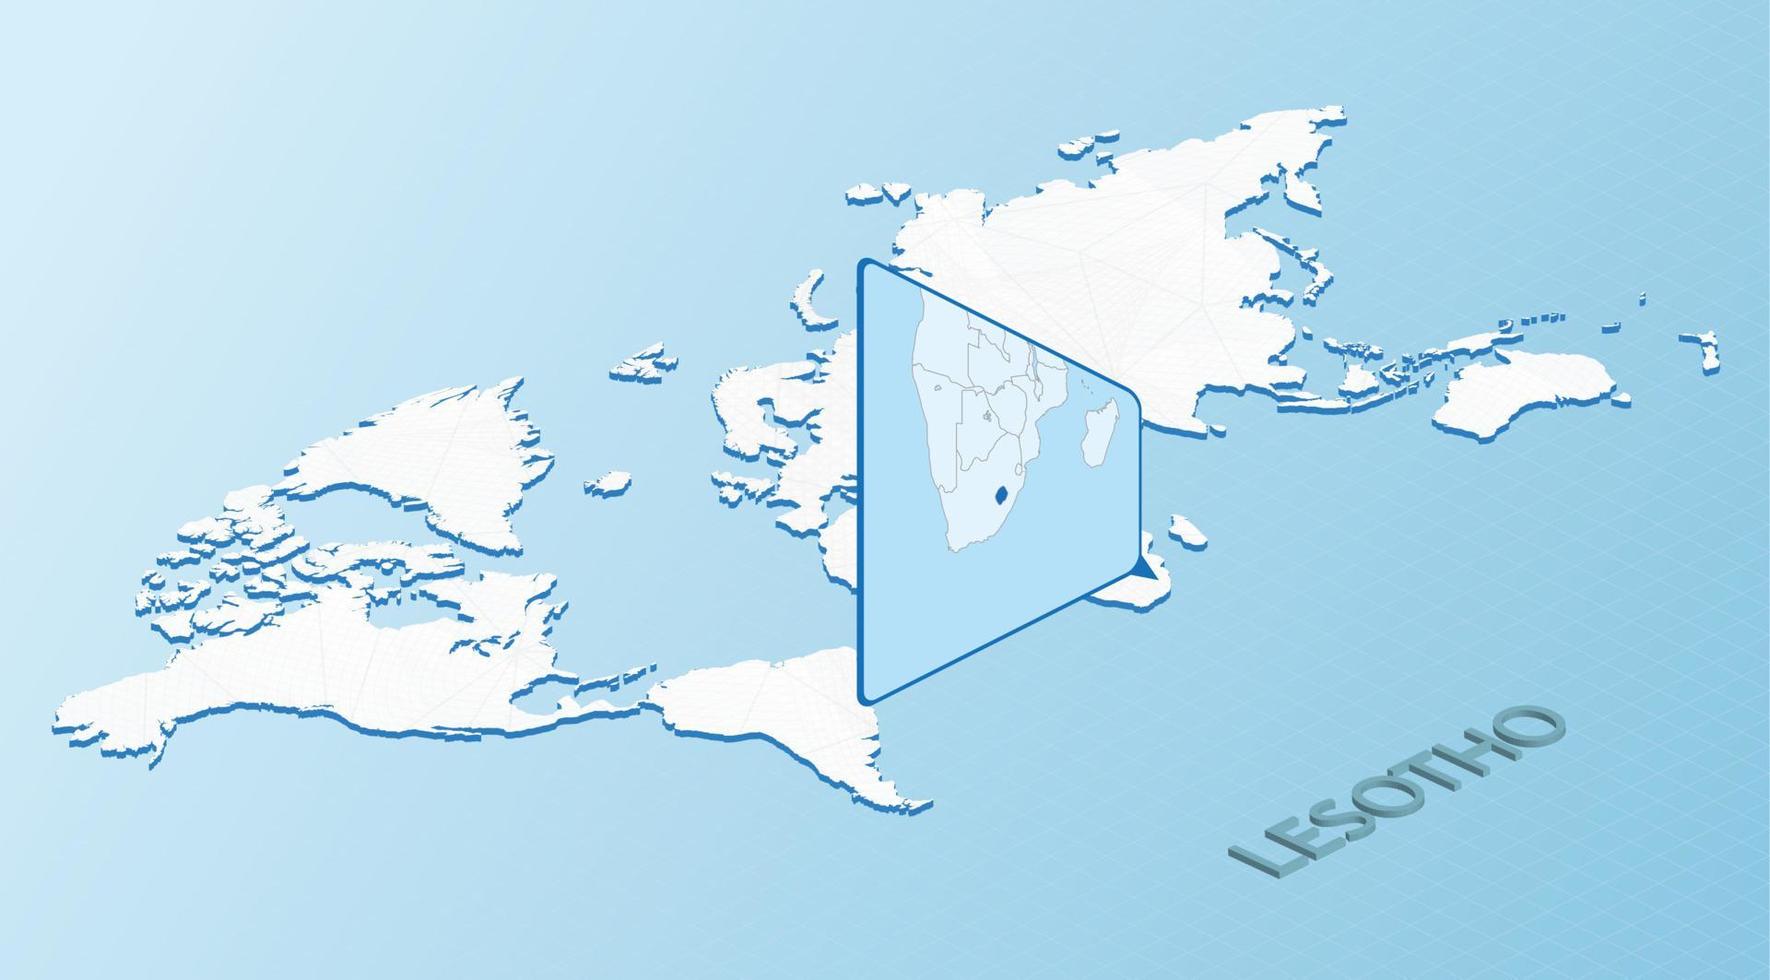 mapa mundial en estilo isométrico con mapa detallado de lesotho. mapa de lesotho azul claro con mapa del mundo abstracto. vector